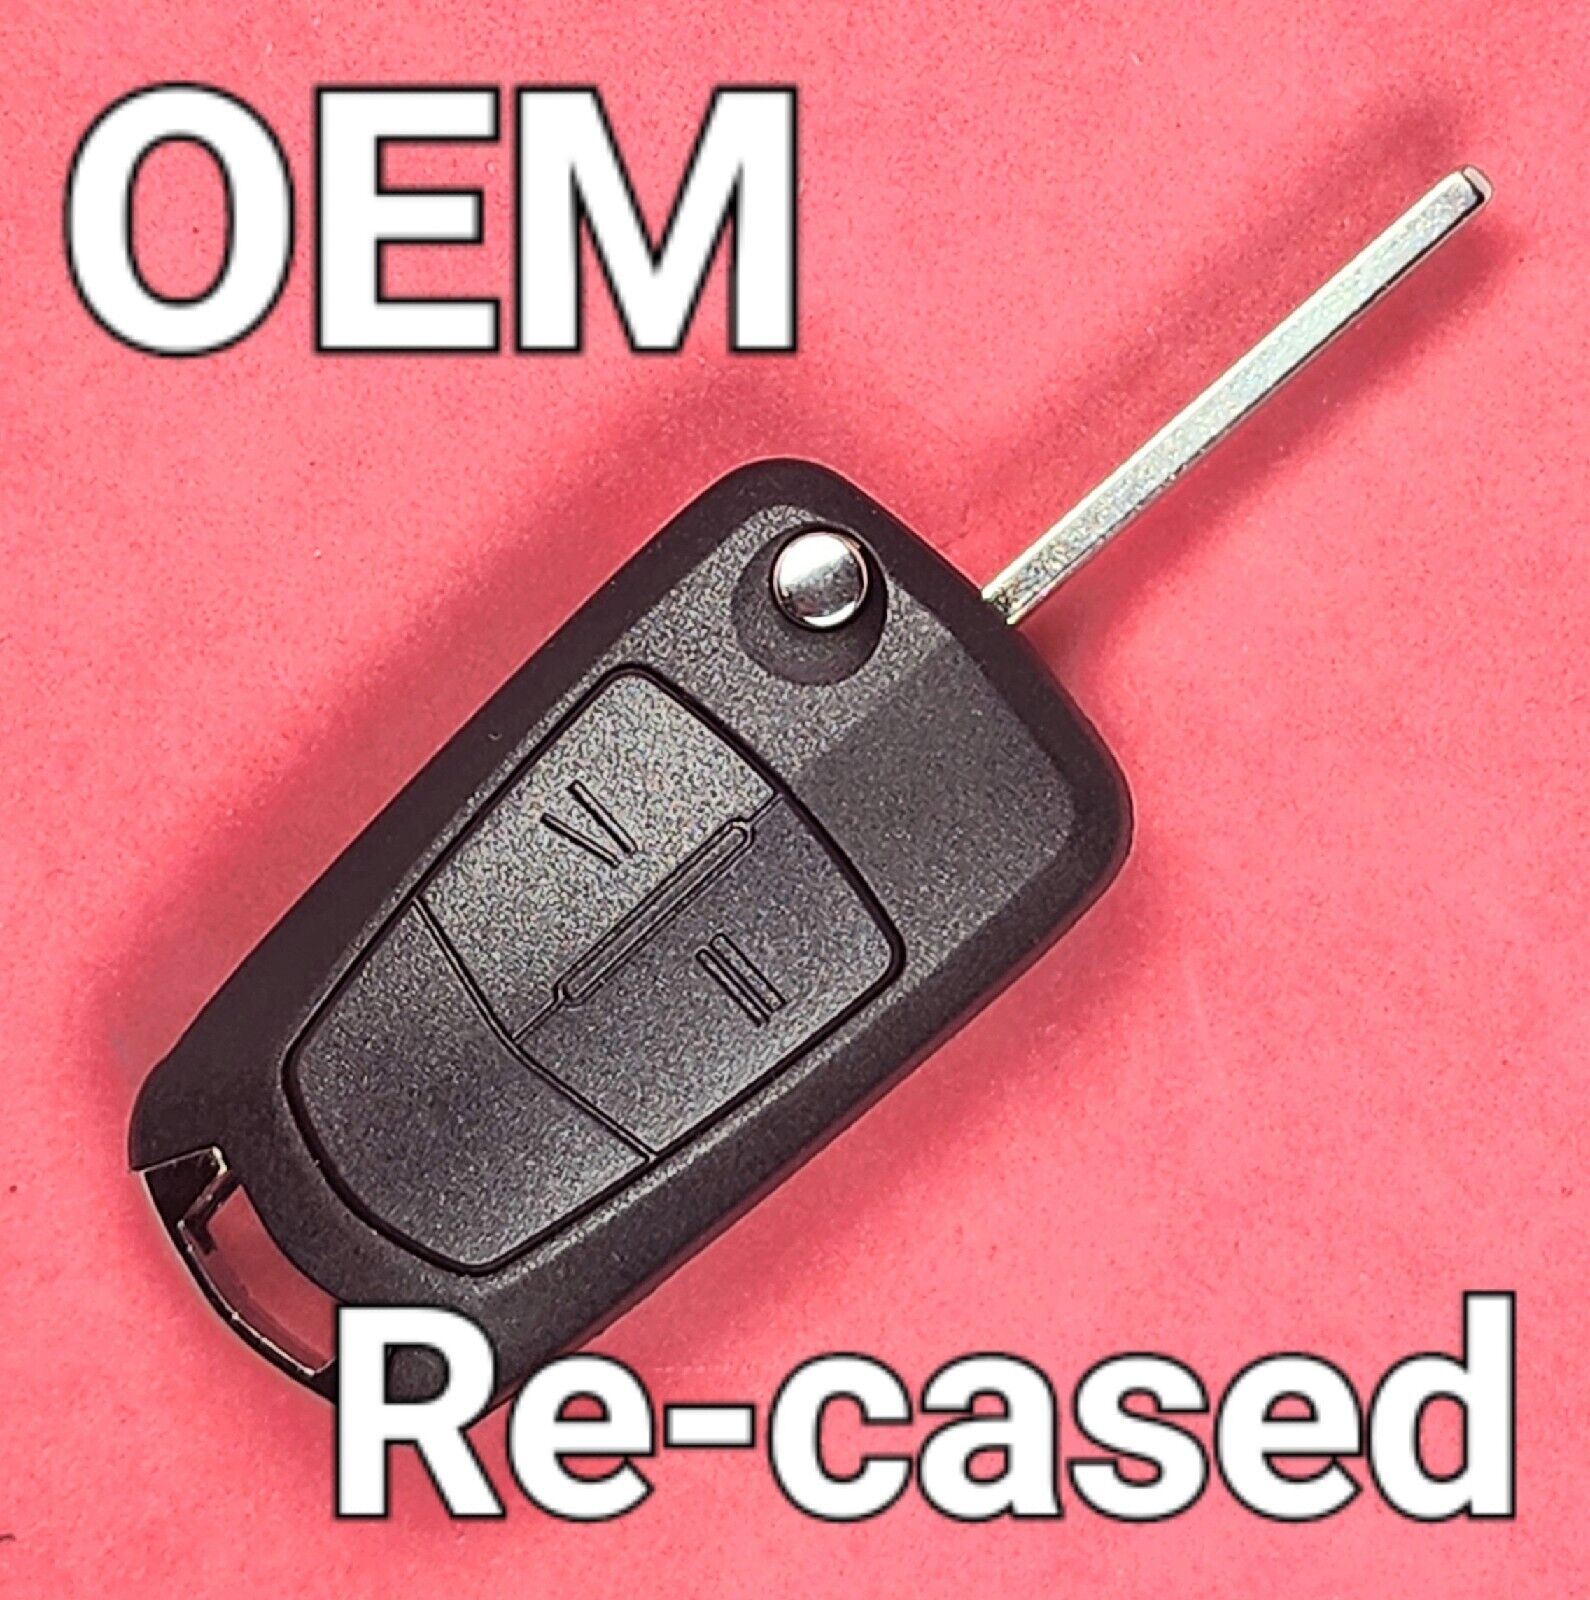 Re-cased OEM 2008 - 2009 Saturn Astra Remote Flip Key 2B N5F736744-A